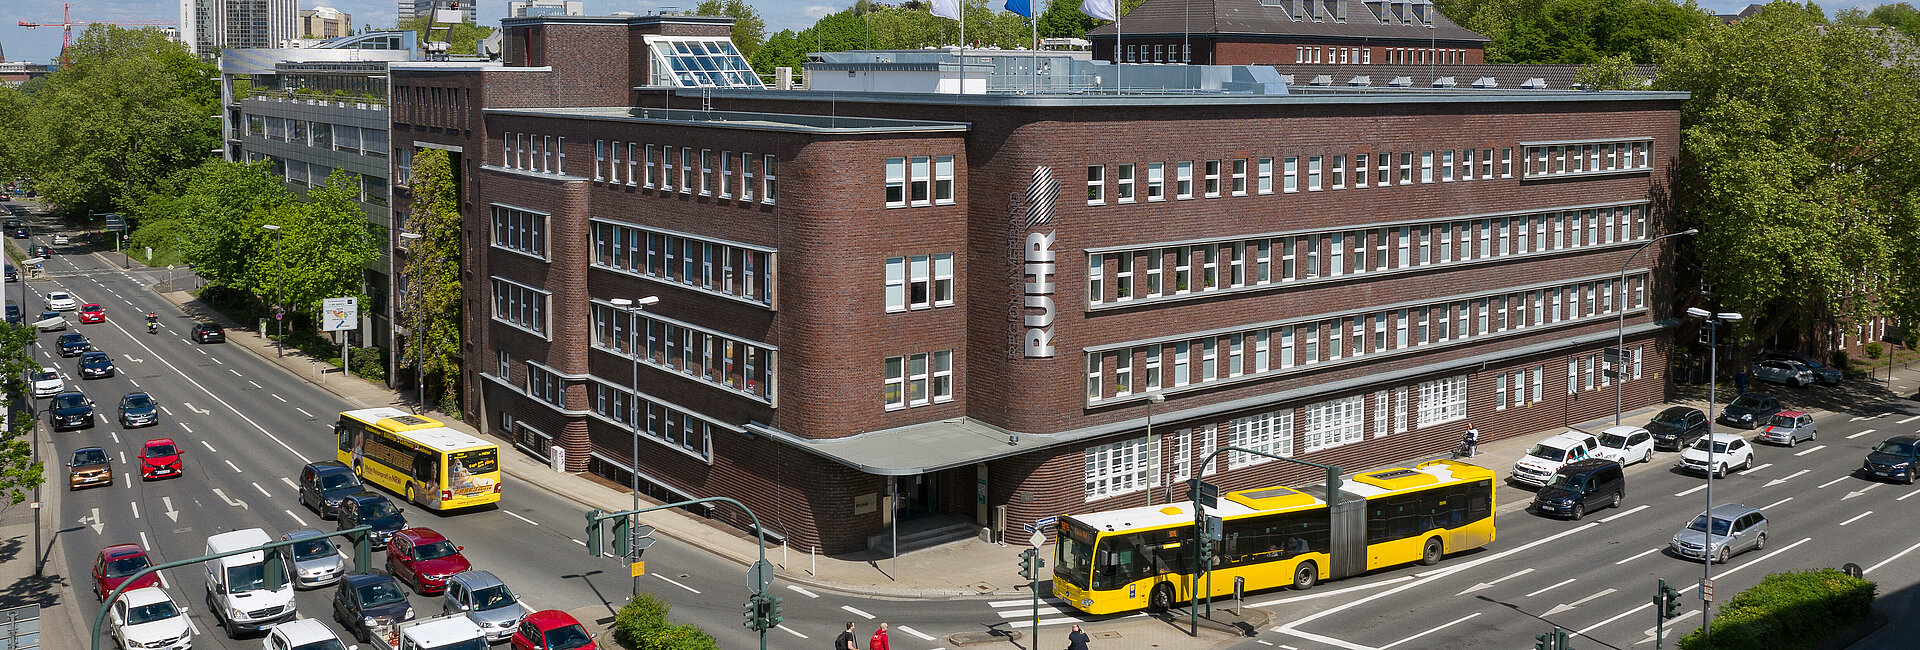 Hauptgebäude des Regionalverbandes Ruhr in Essen